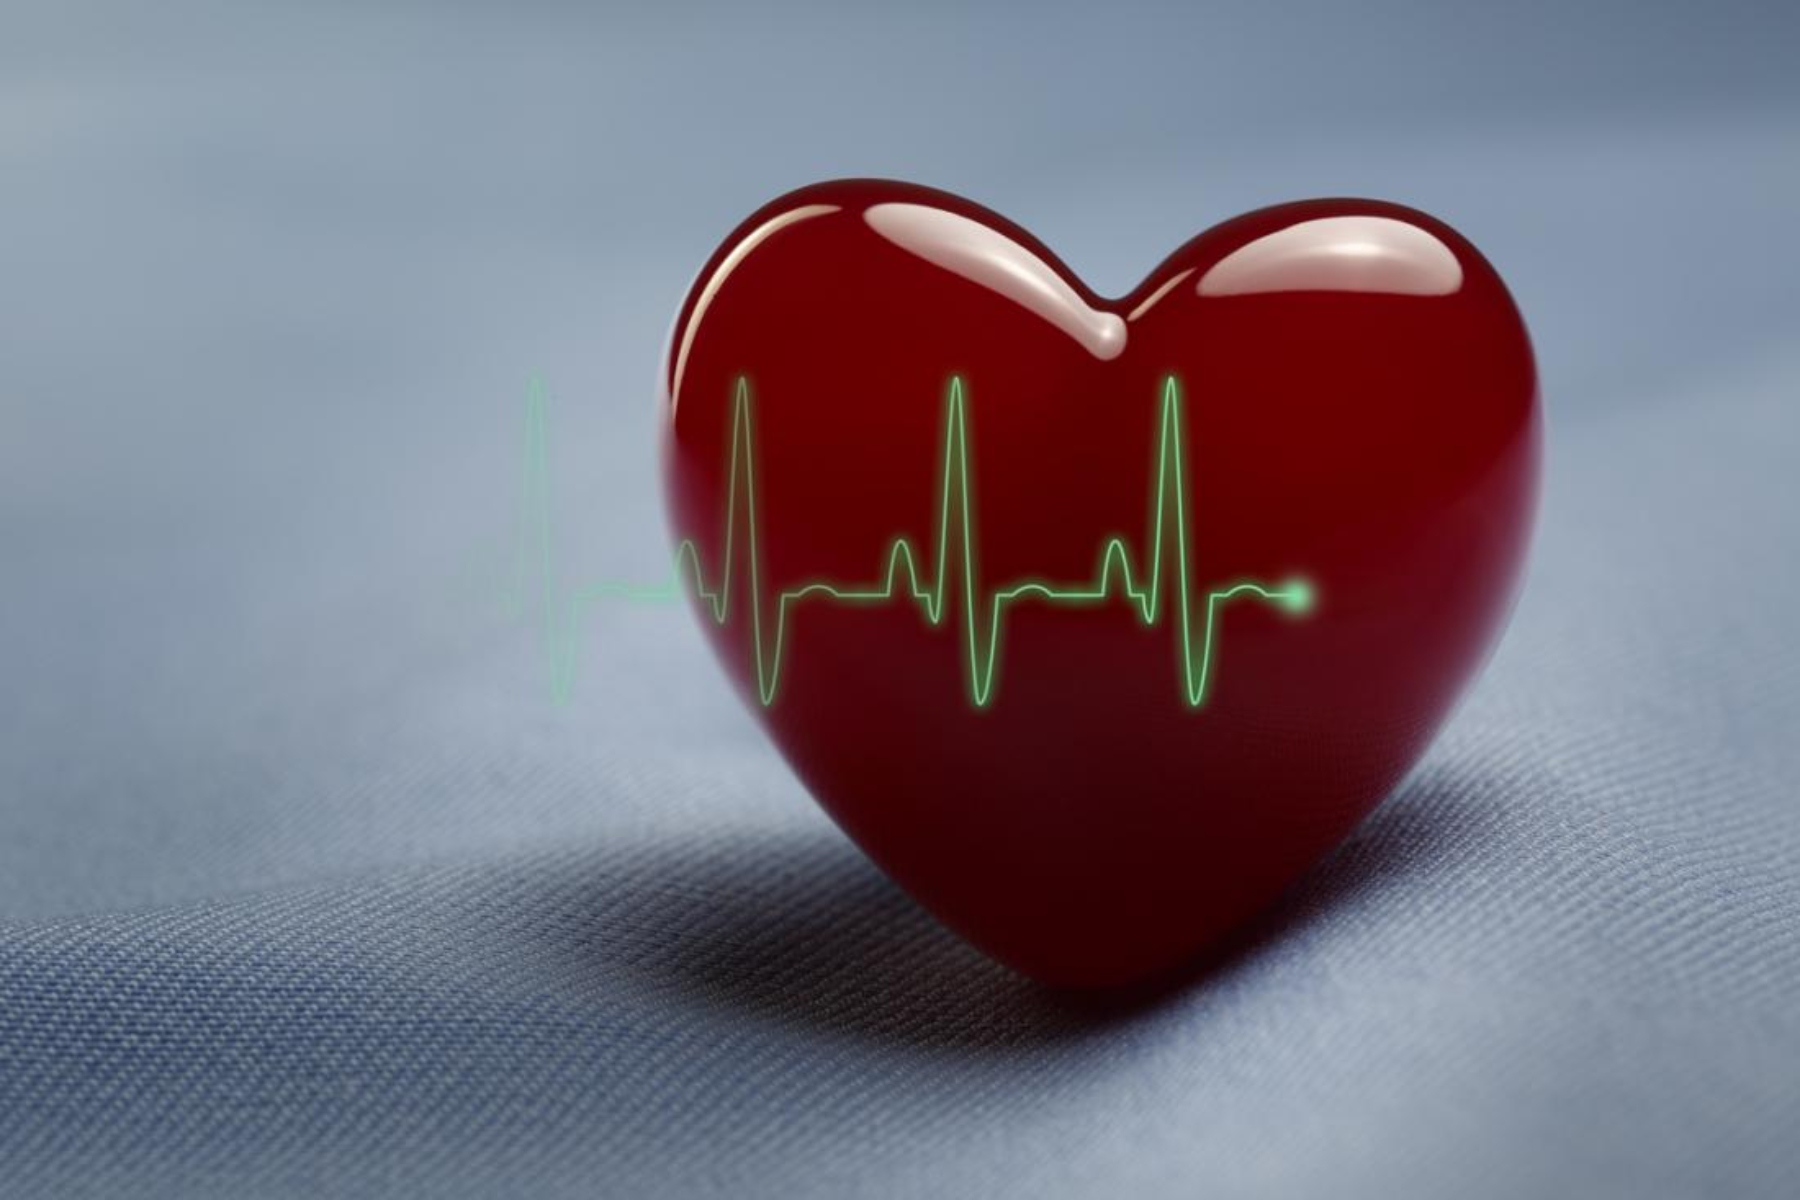 Σεξ καρδιά: Χαμηλό κίνδυνο αιφνίδιου θανάτου έχουν νεότεροι ενήλικες με καρδιακή νόσο